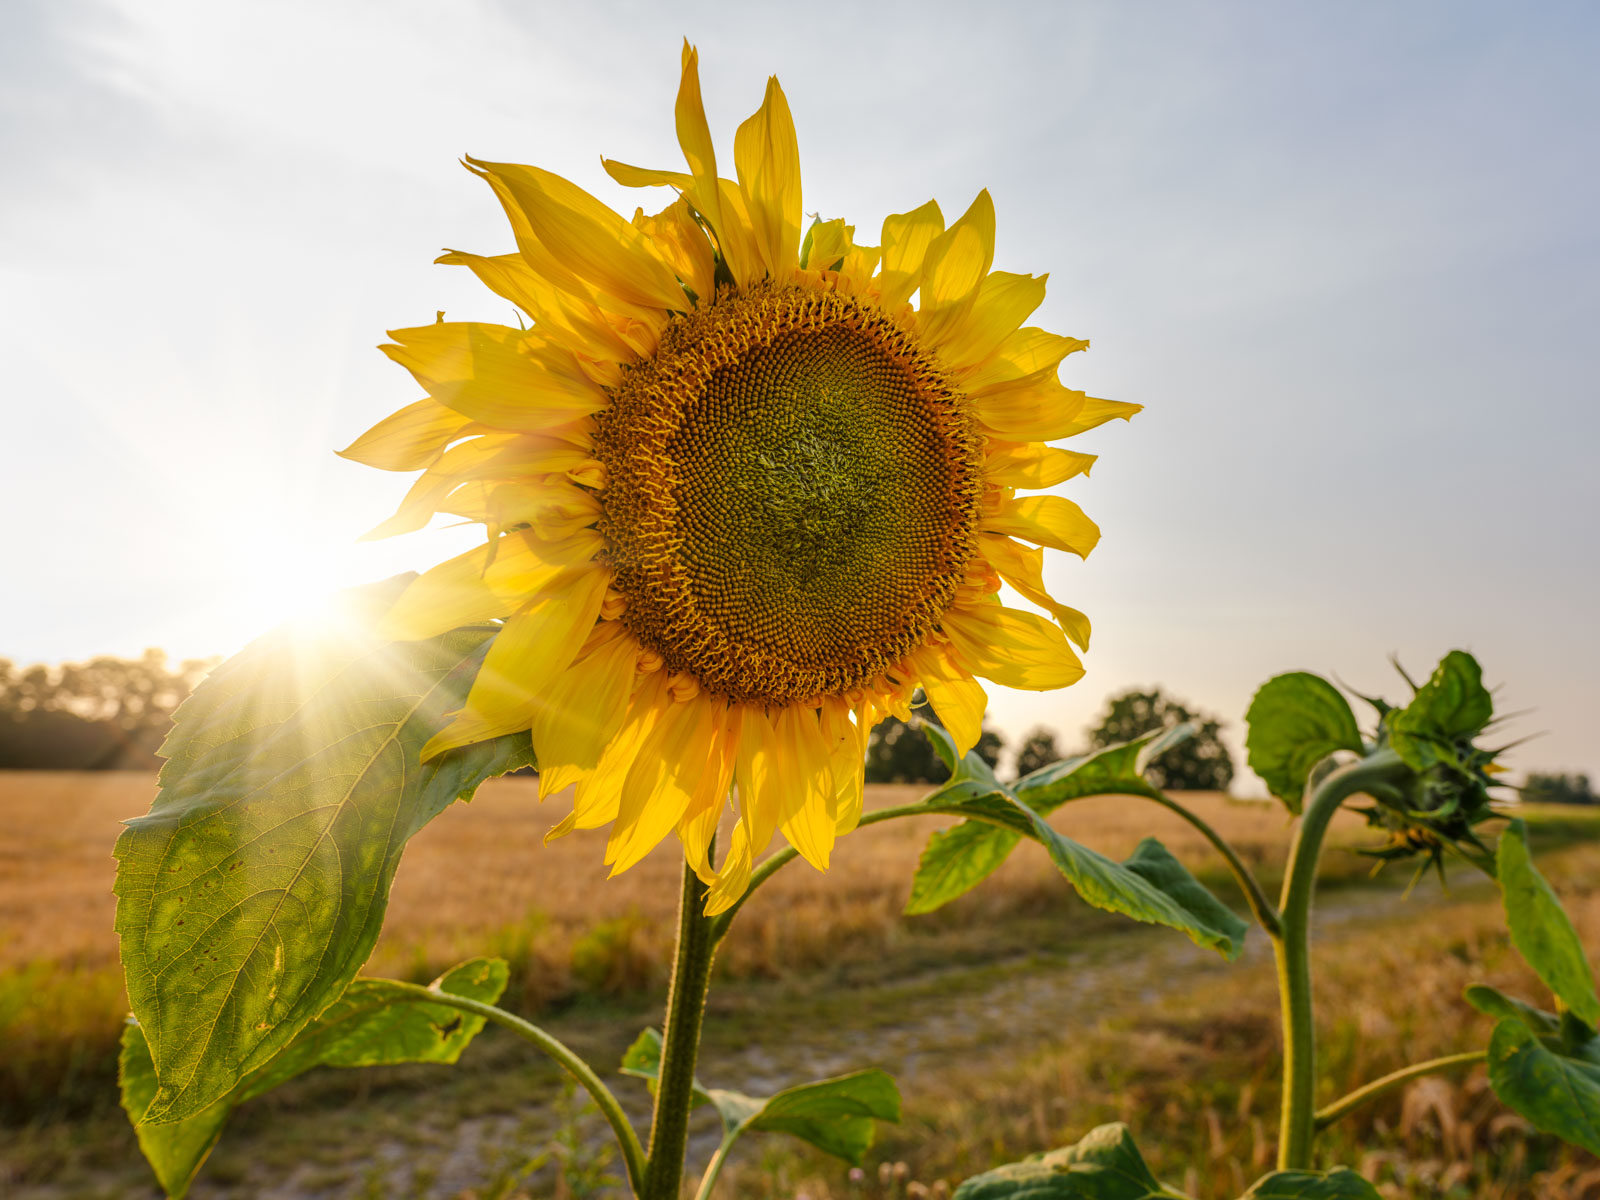 Sunflower in a field near the 'Meyerwald' on an evening in August 2020 (Bielefeld, Germany).